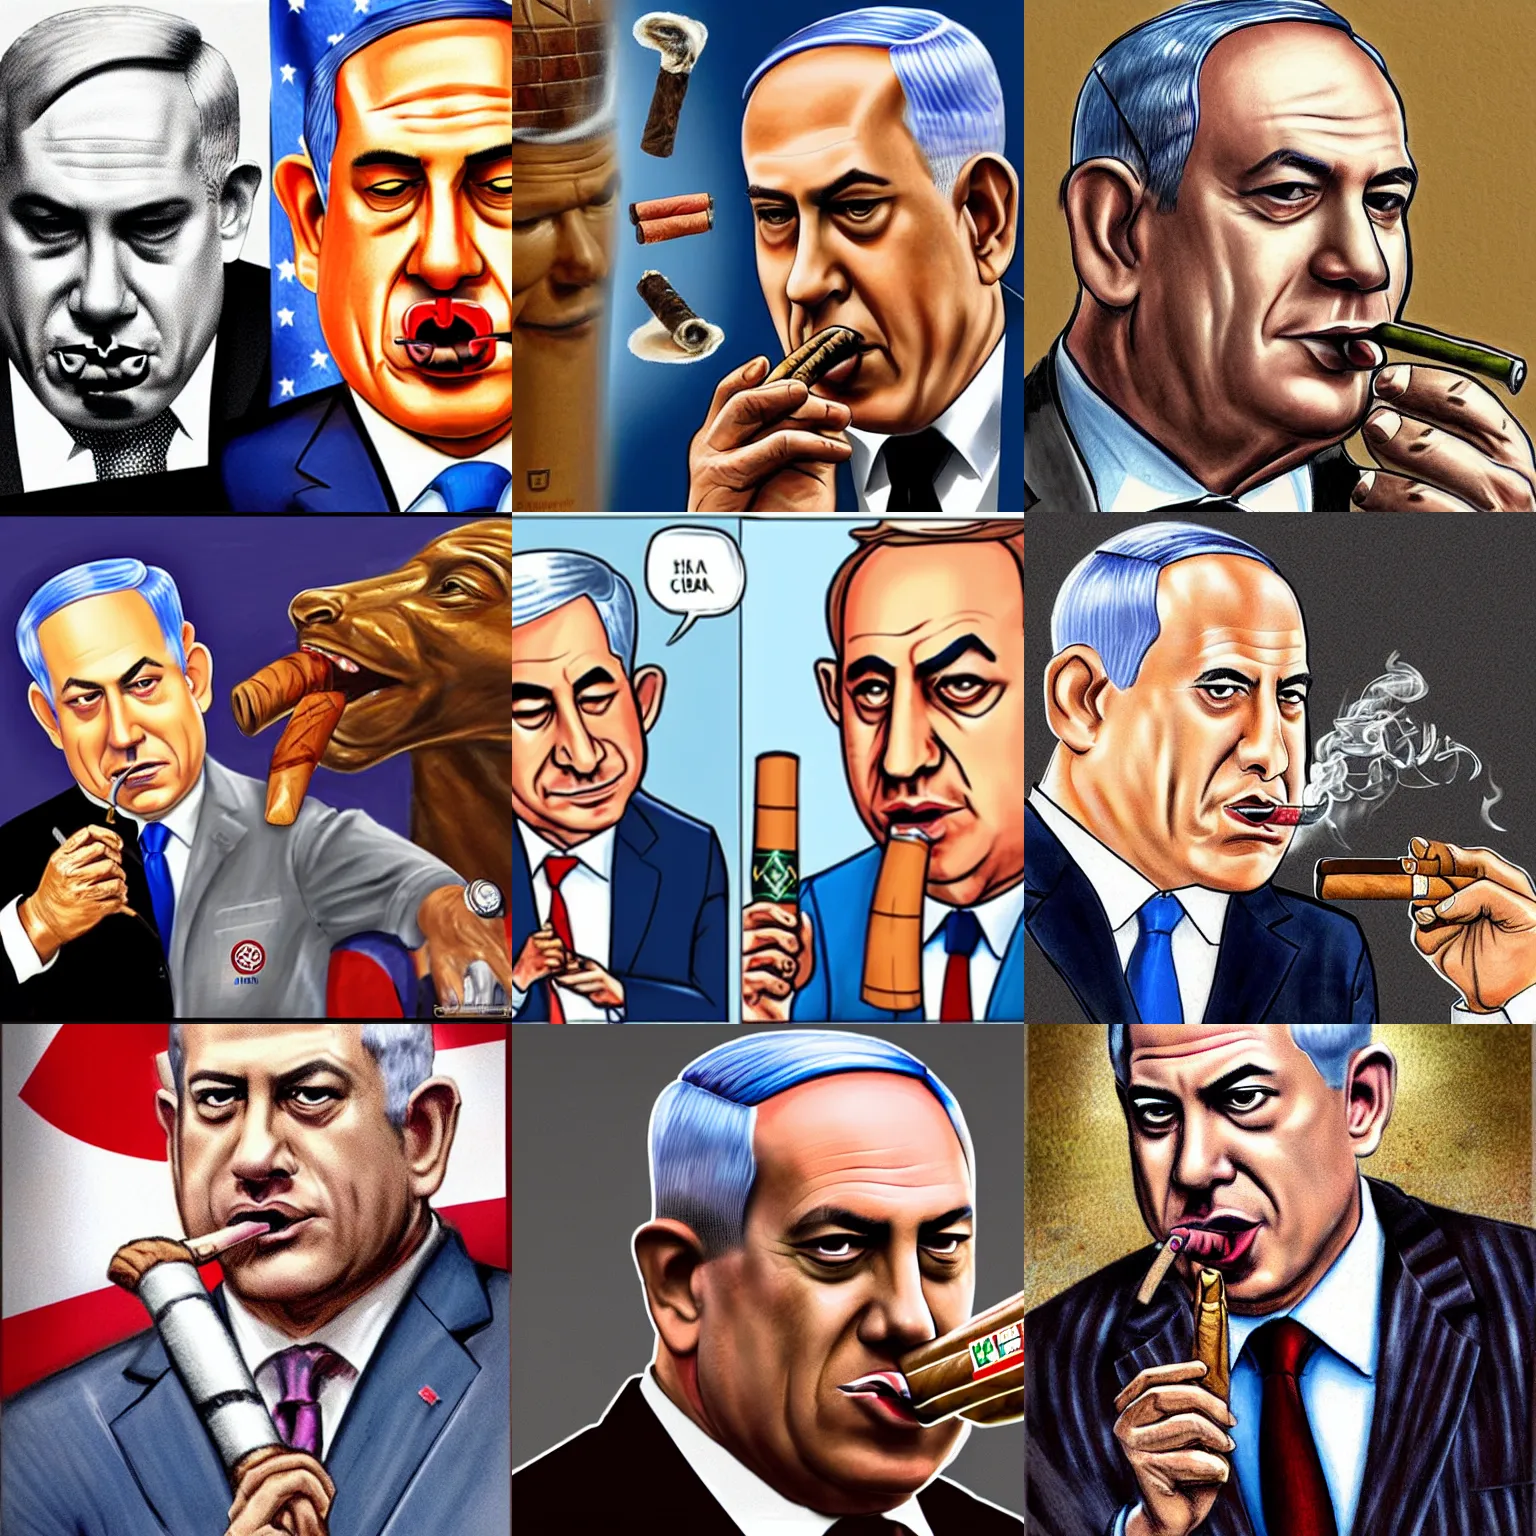 Prompt: netanyahu smoking a cuban cigar, cartoon, hyper realistic, hyper detailed